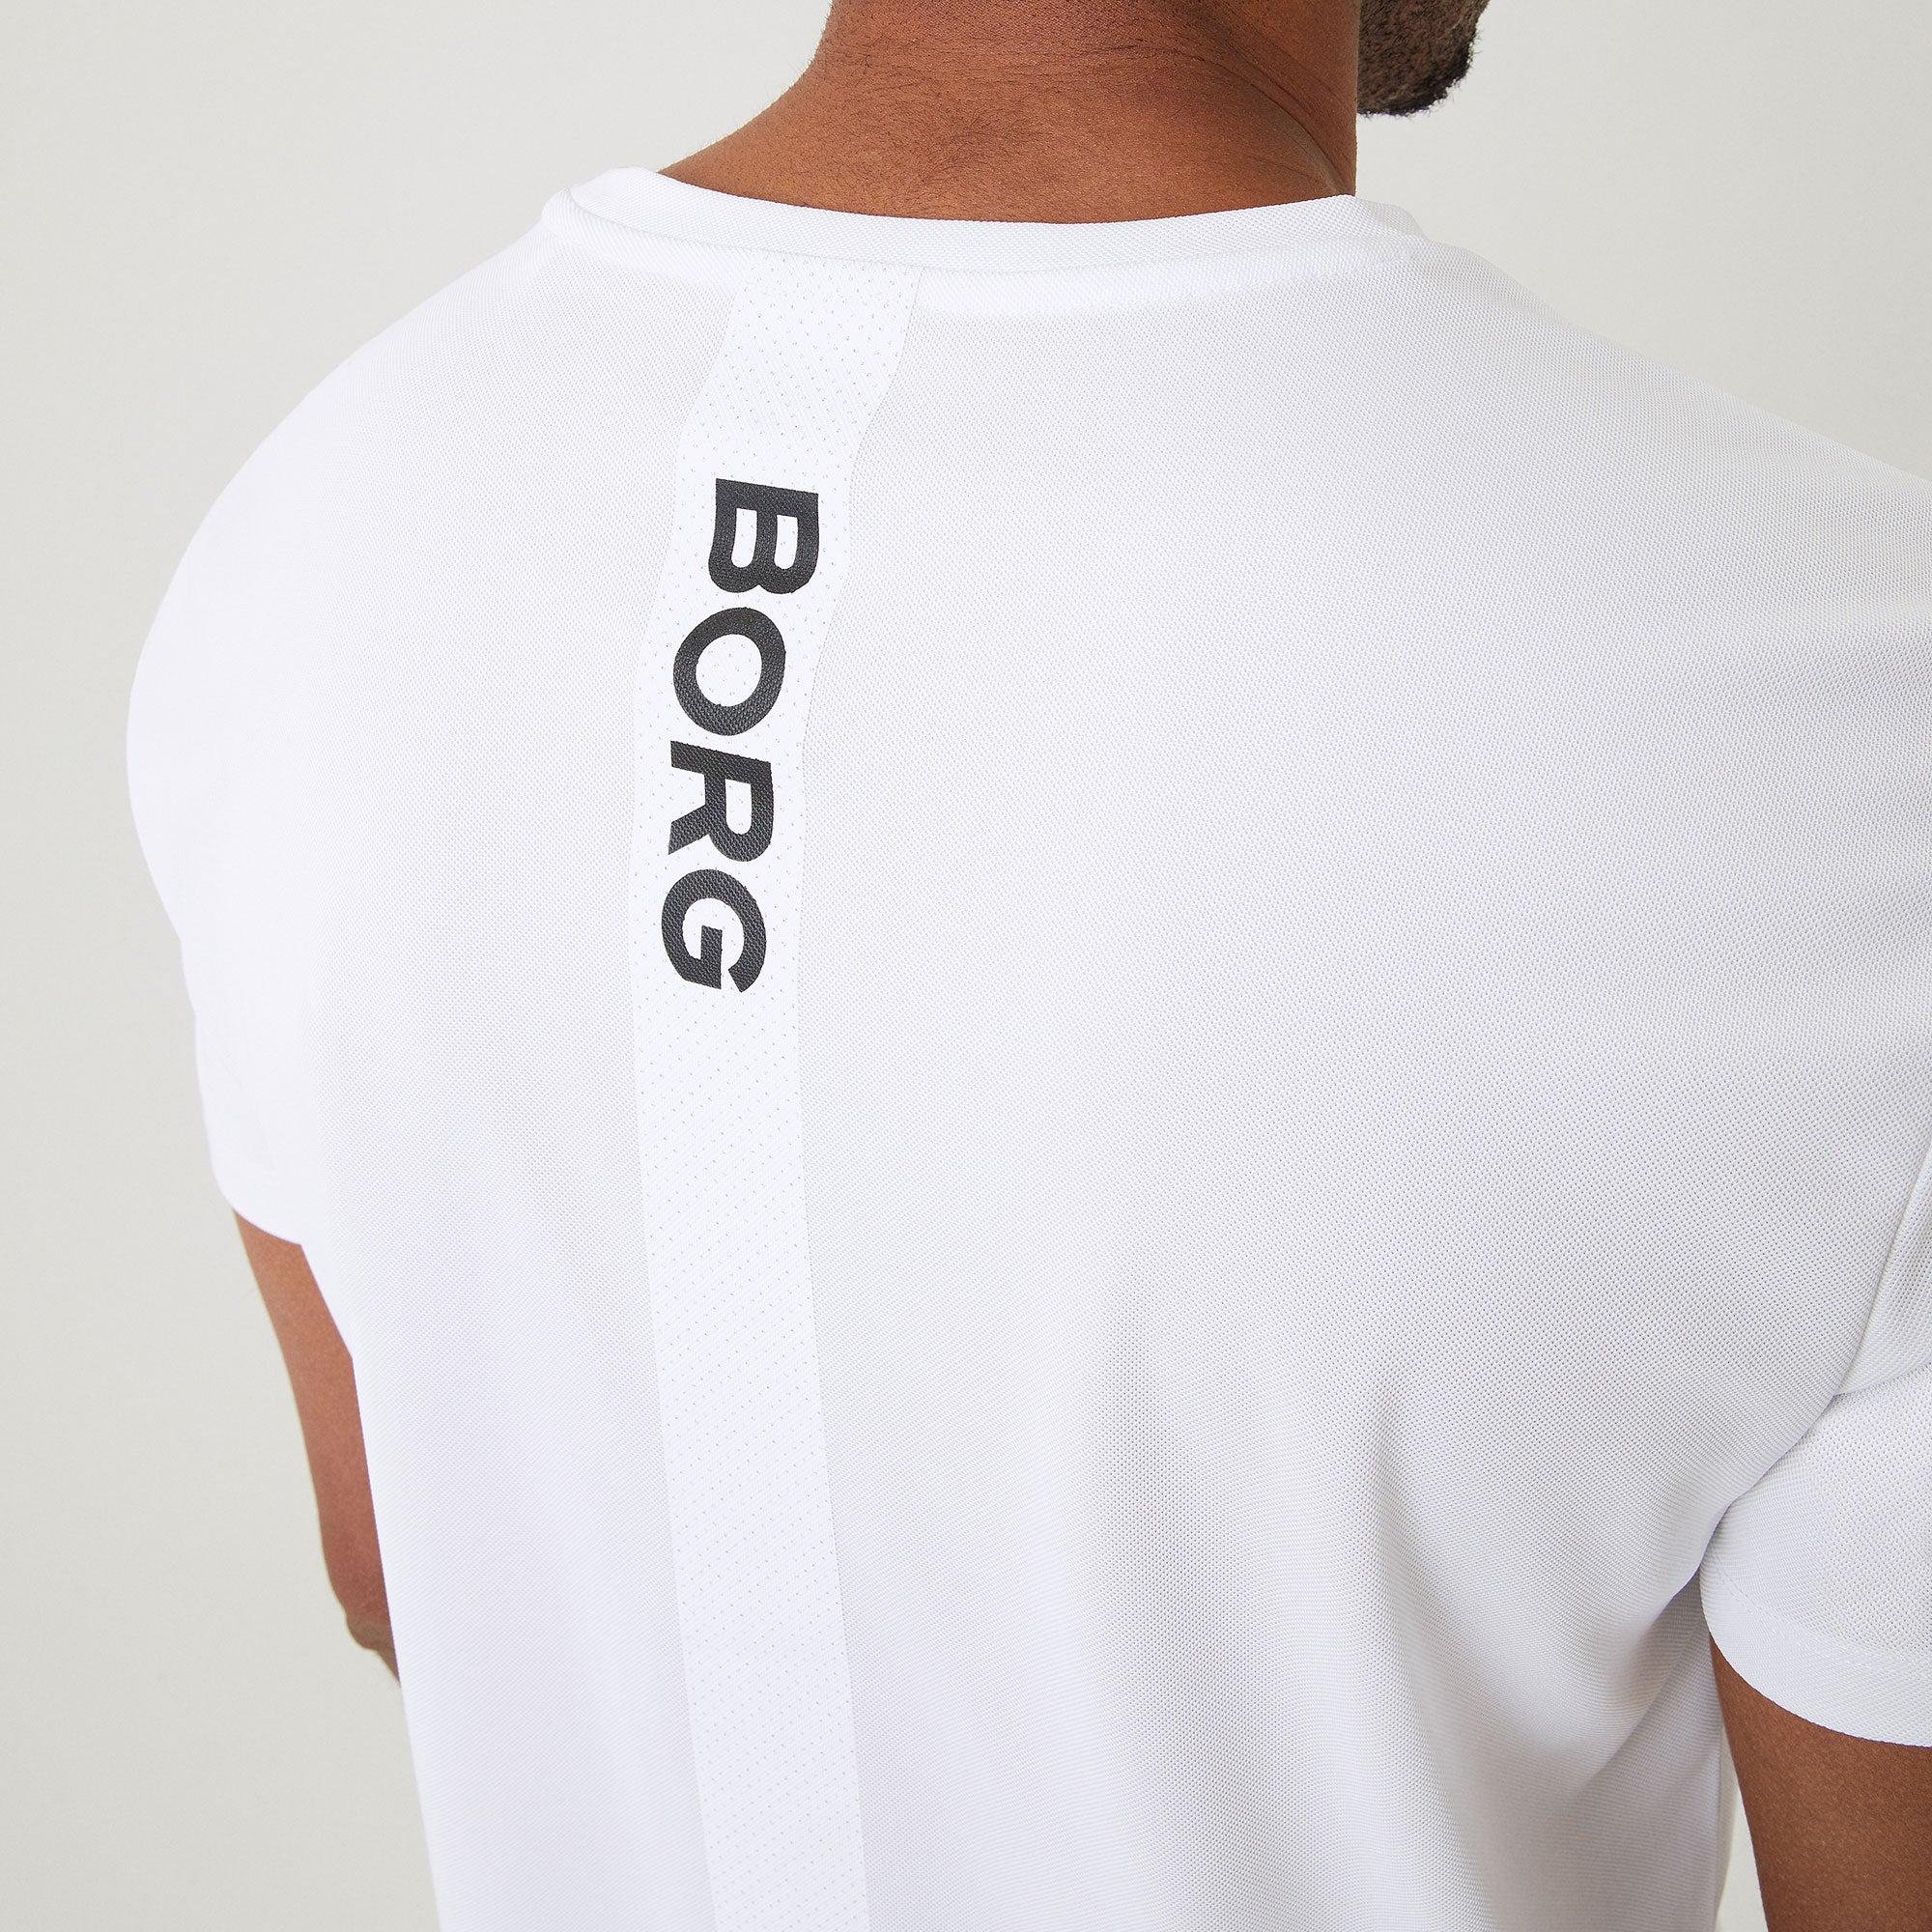 Björn Borg Ace Men's Stripe Tennis Shirt White (4)